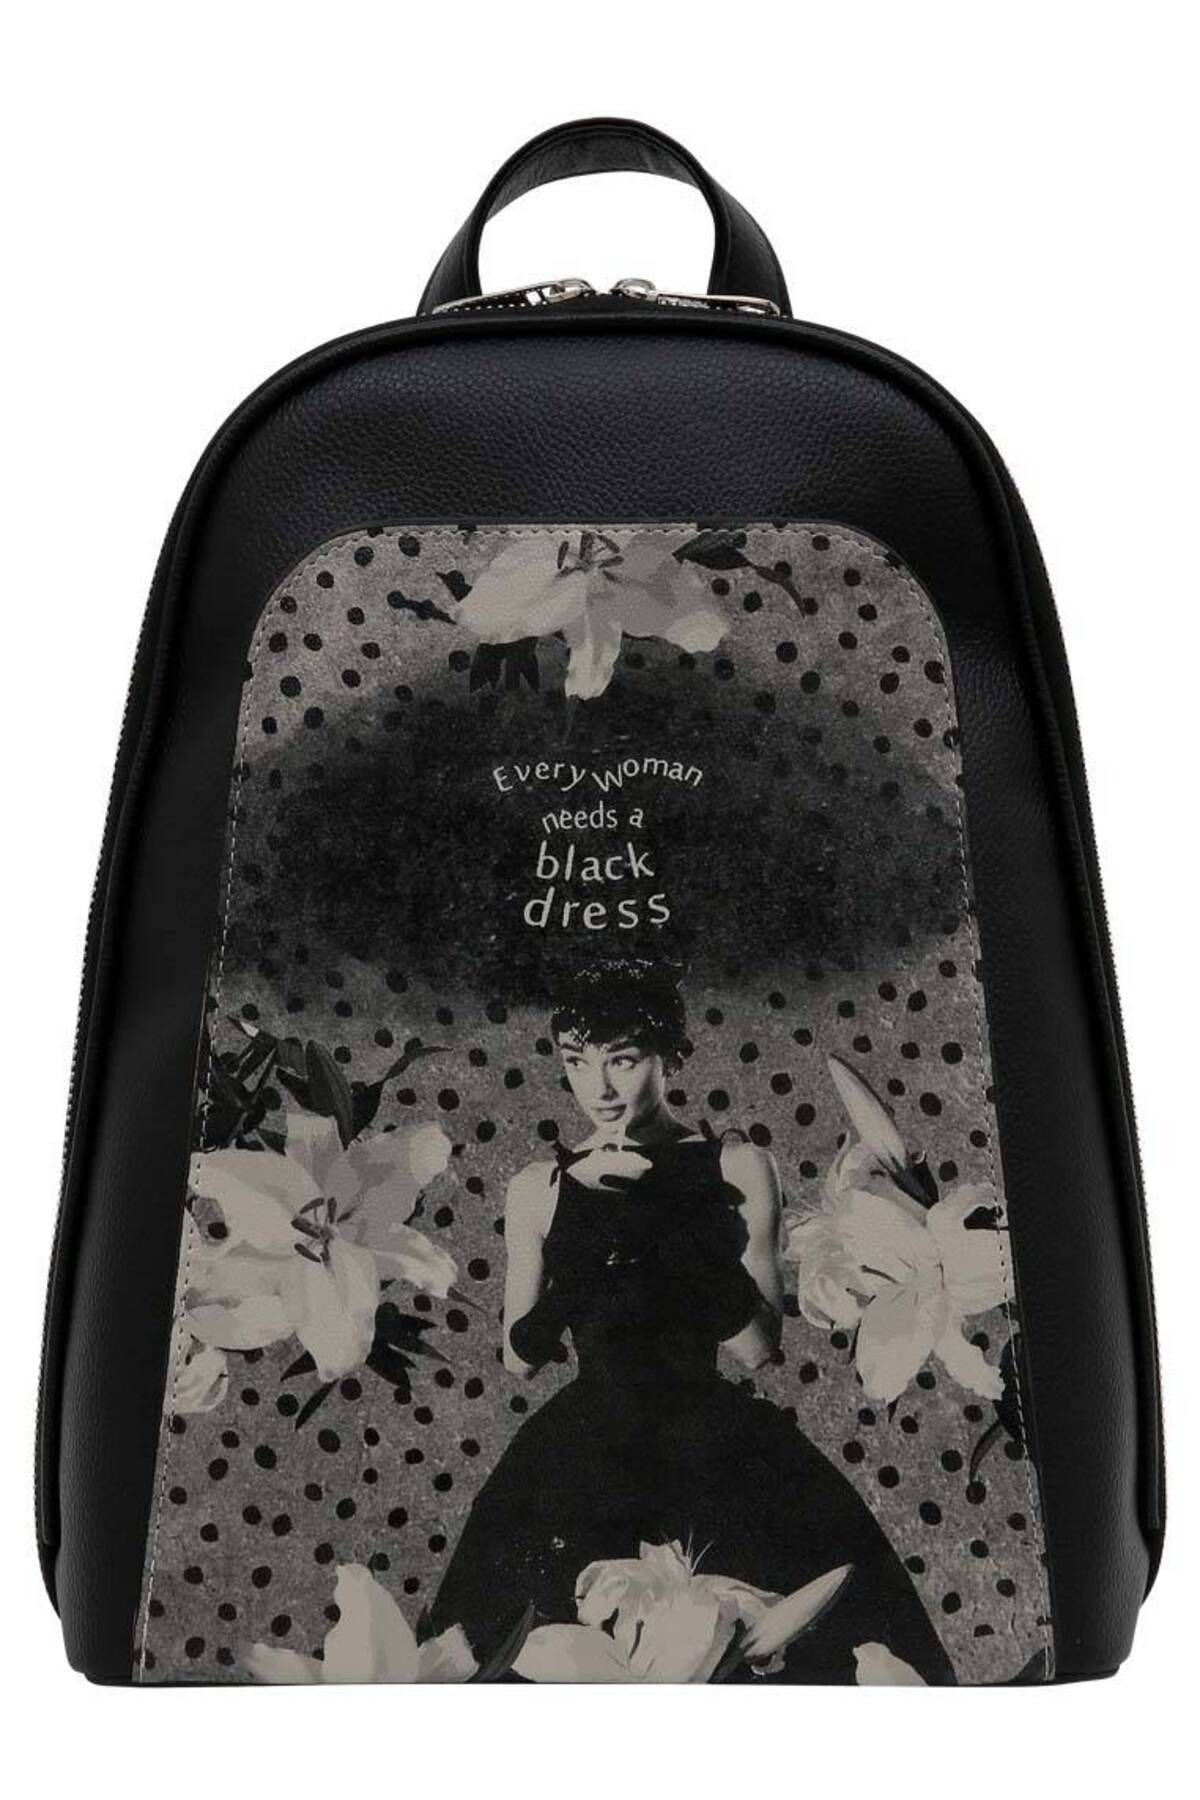 Dogo Kadın Vegan Deri Siyah Sırt Çantası - Black Dress Tasarım